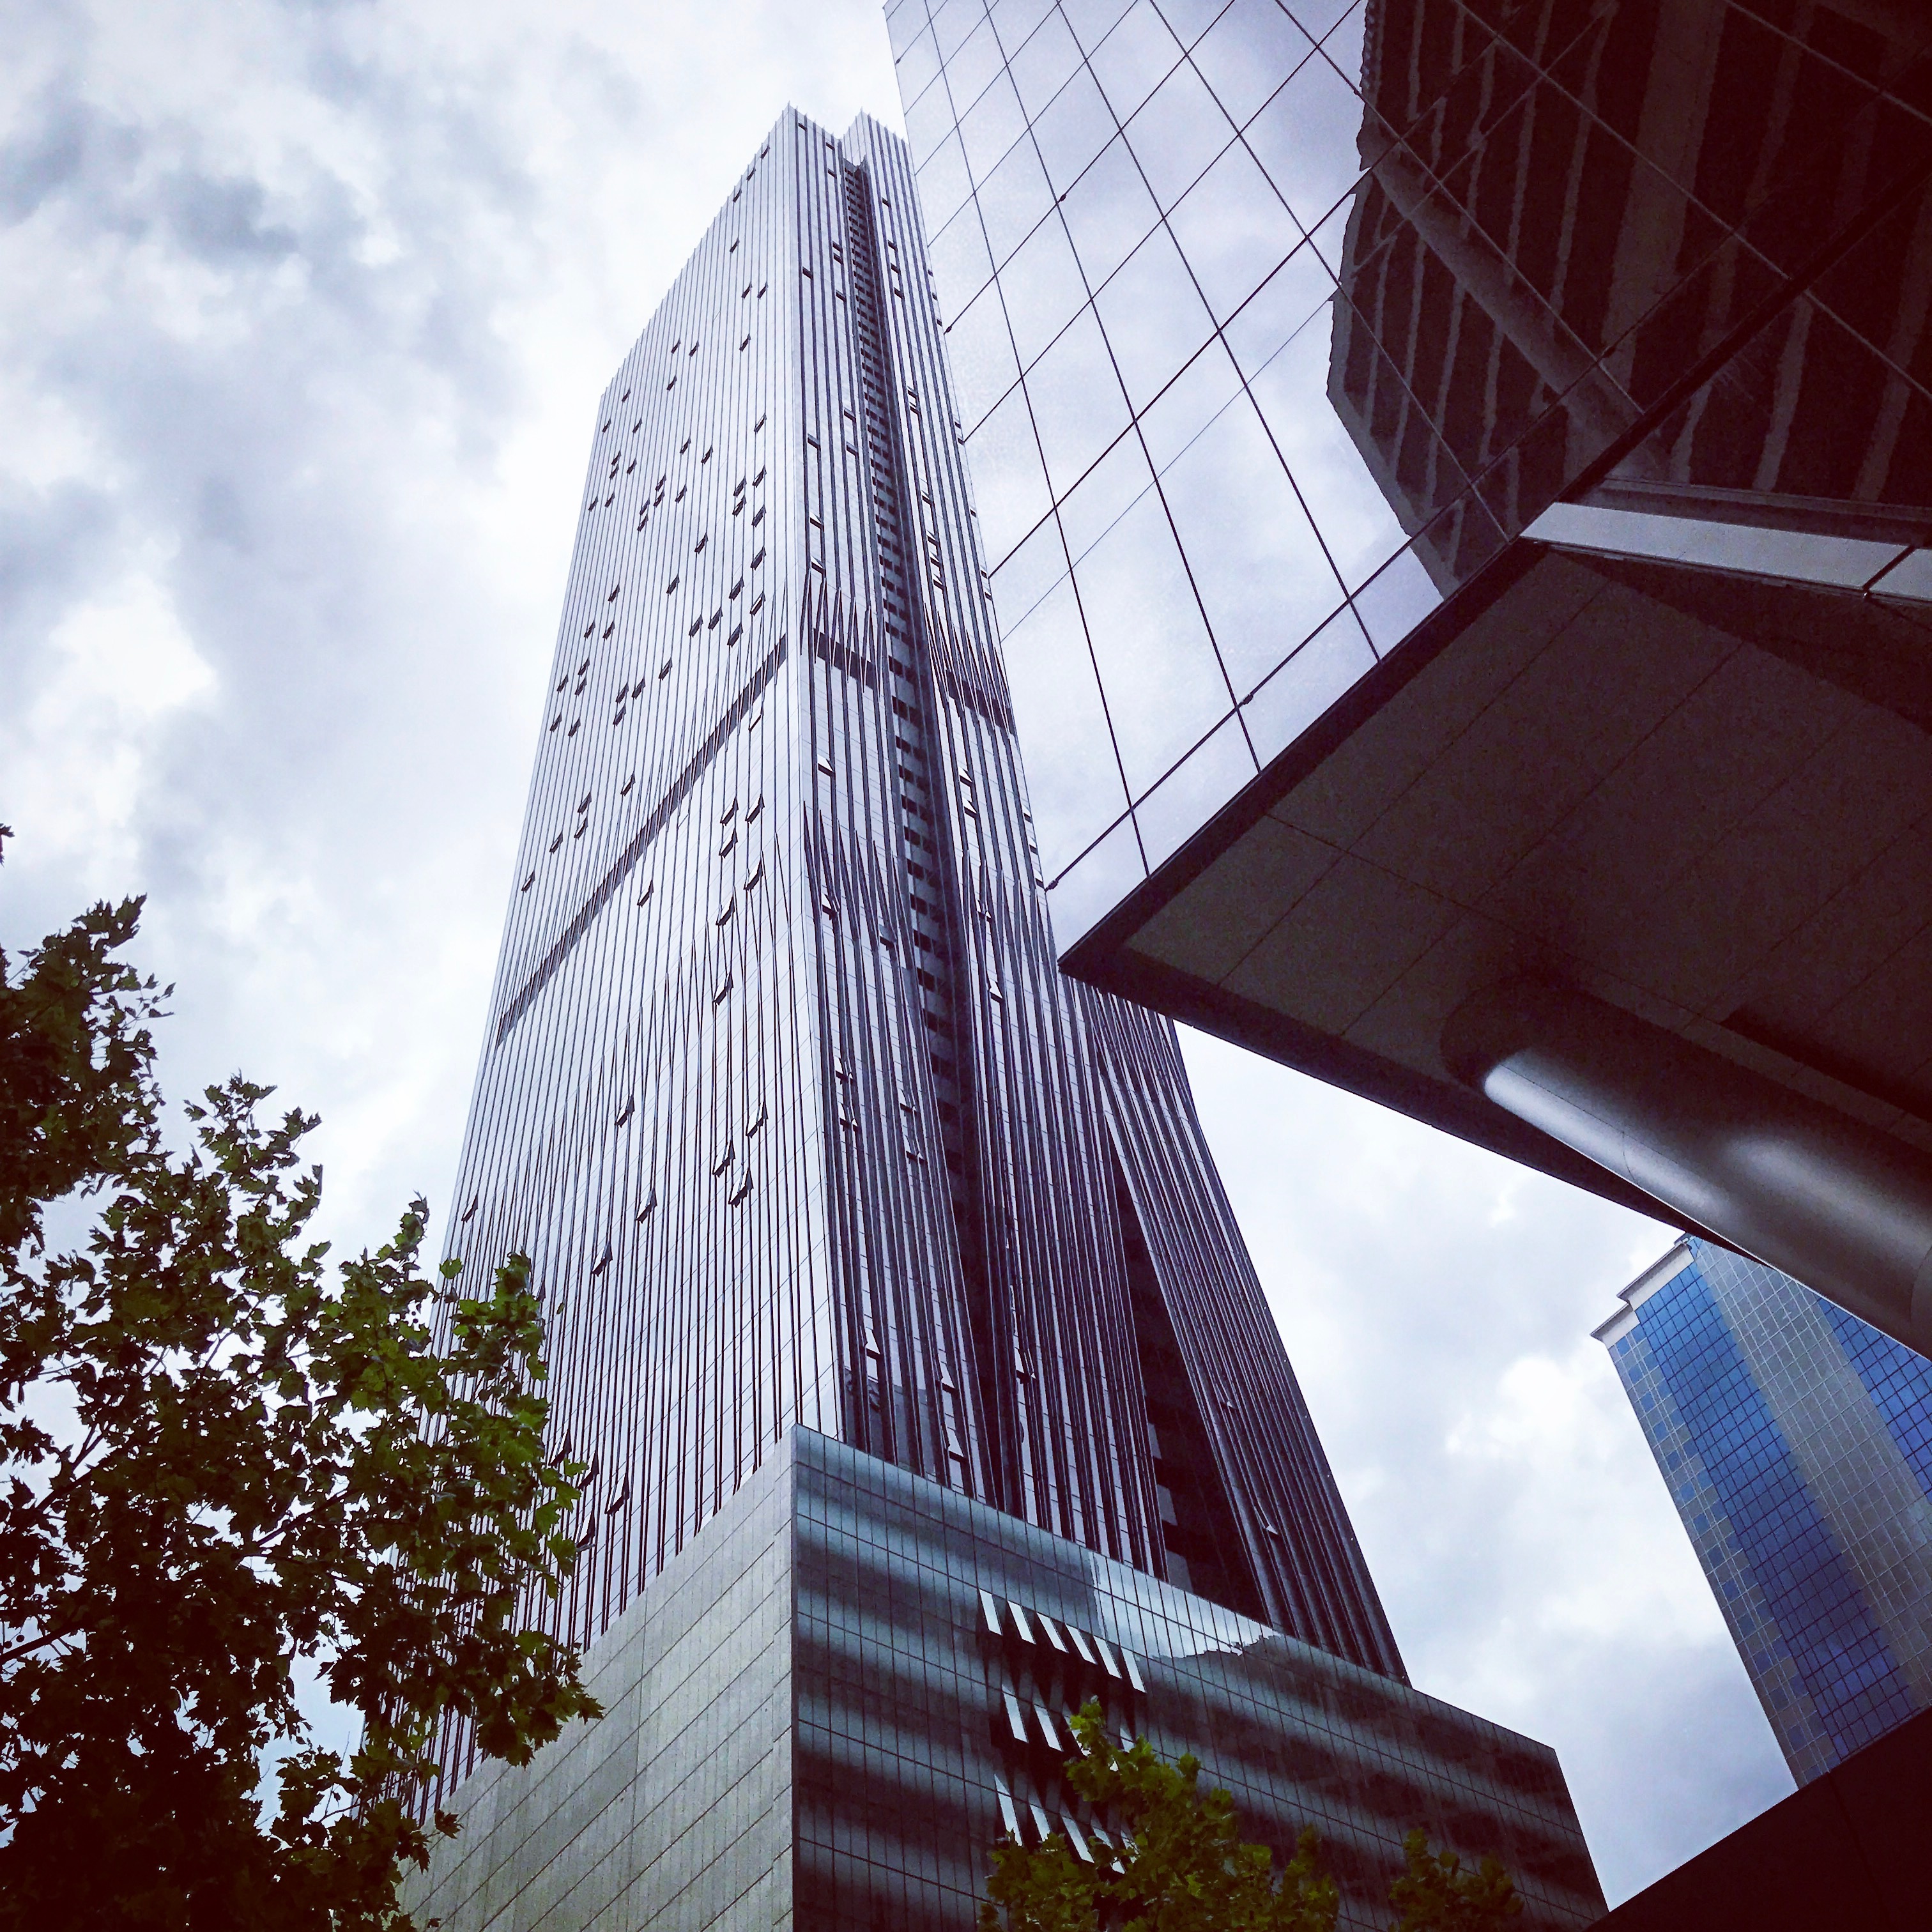 Melbourne Skyscraper